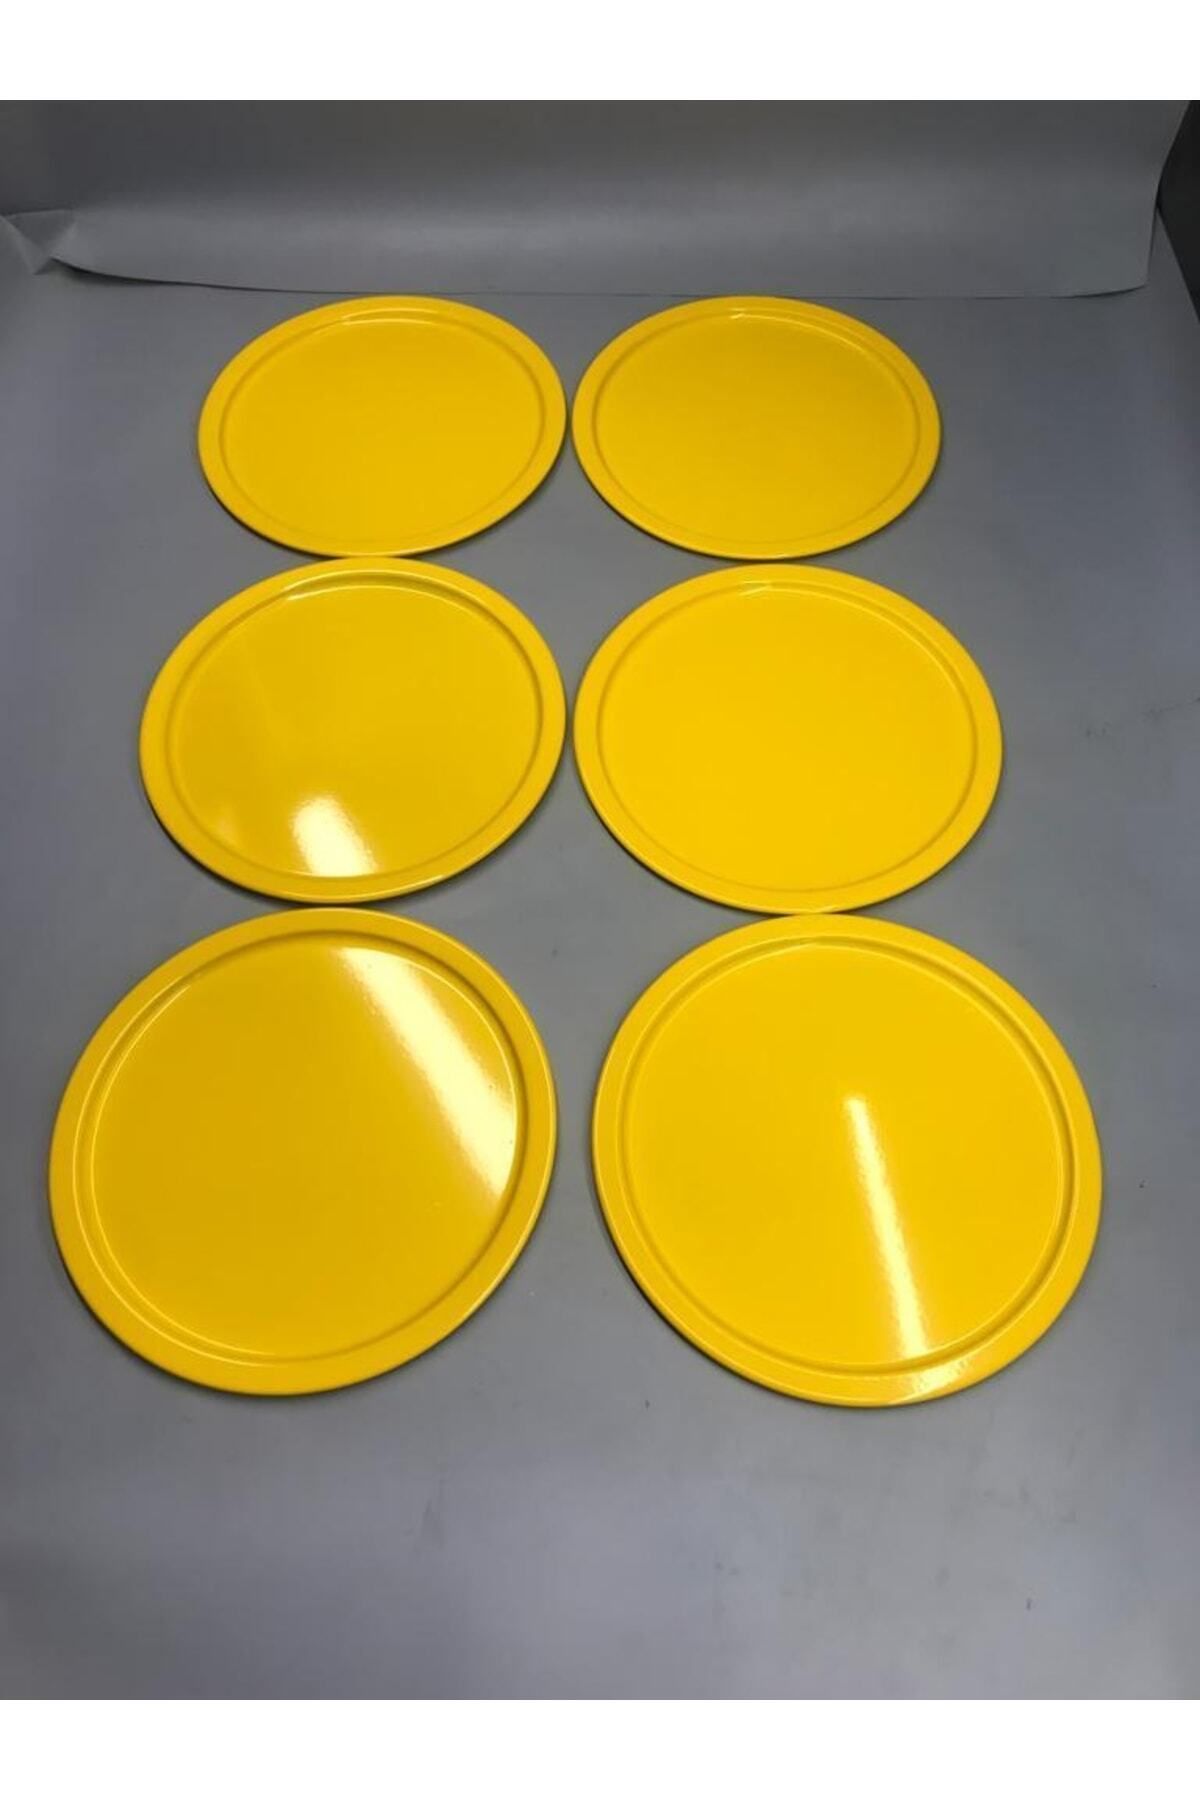 Aslı Hediyelik 6'lı Metal Sarı Tek Kişilik Dekoratif Çay, Kahve Ve Pasta Servisi Sunum Tepsisi 23 Cm